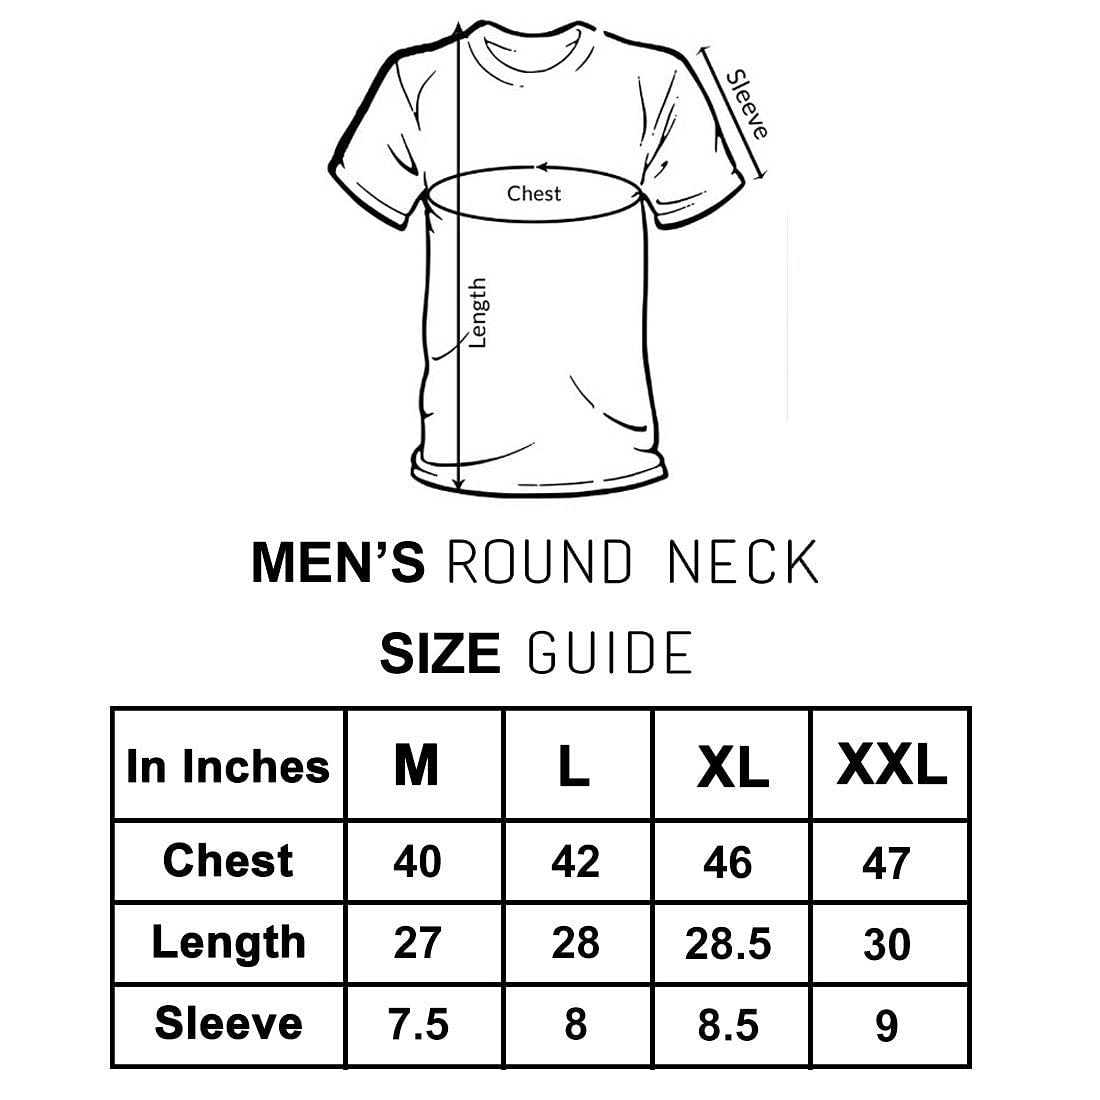 Nutcase Designer Round Neck Men's T-Shirt Wrinkle-Free Poly Cotton Tees - Anti-You Nutcase